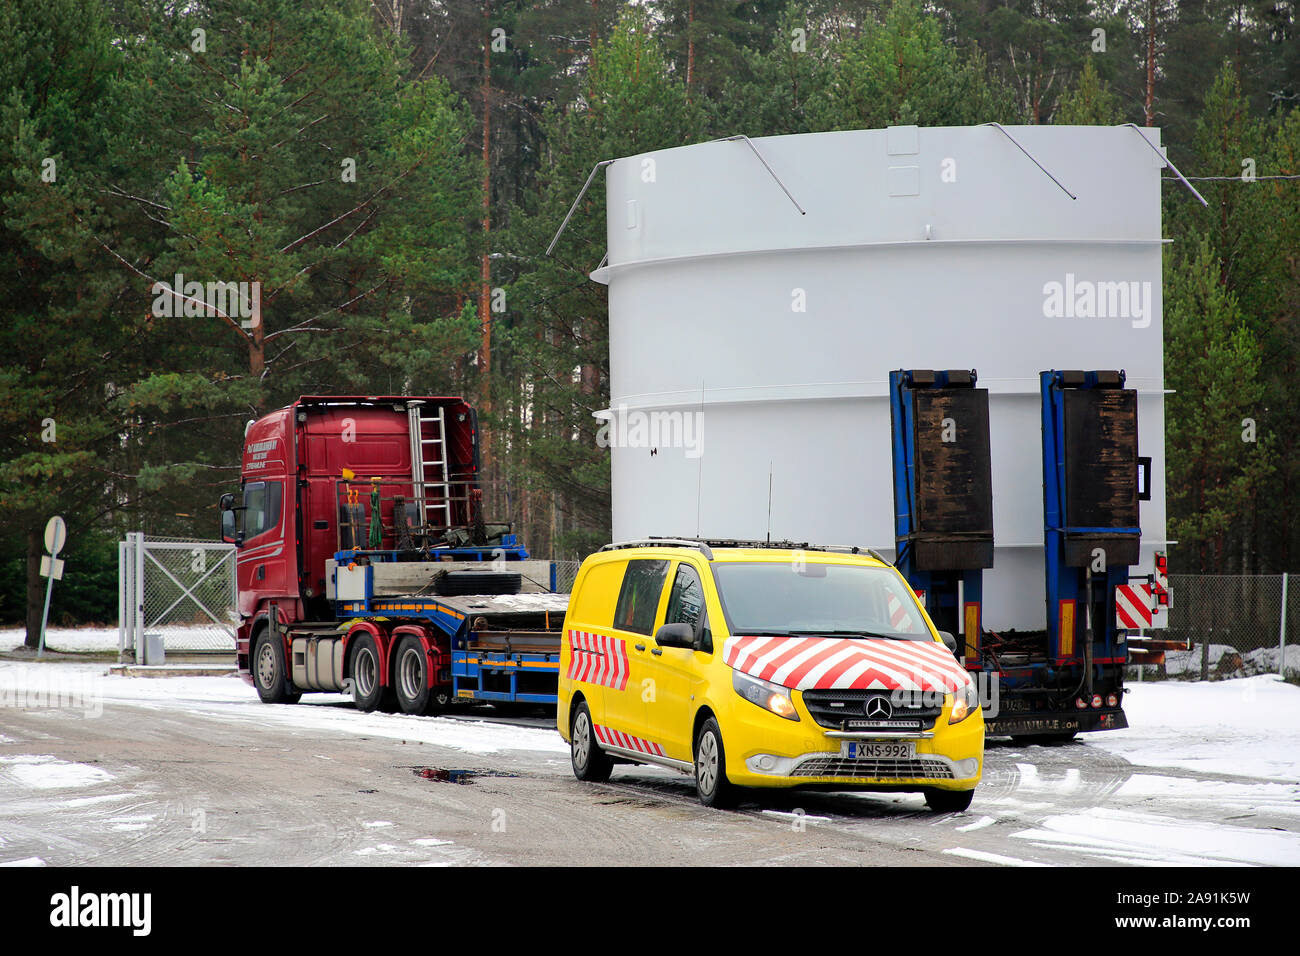 Auflieger mit einem stahlrahmen von 5,25 Meter in der Höhe auf die Ladefläche der Fabrik mit einem Begleitfahrzeug. Salo, Finnland. Nov 8, 2019. Stockfoto